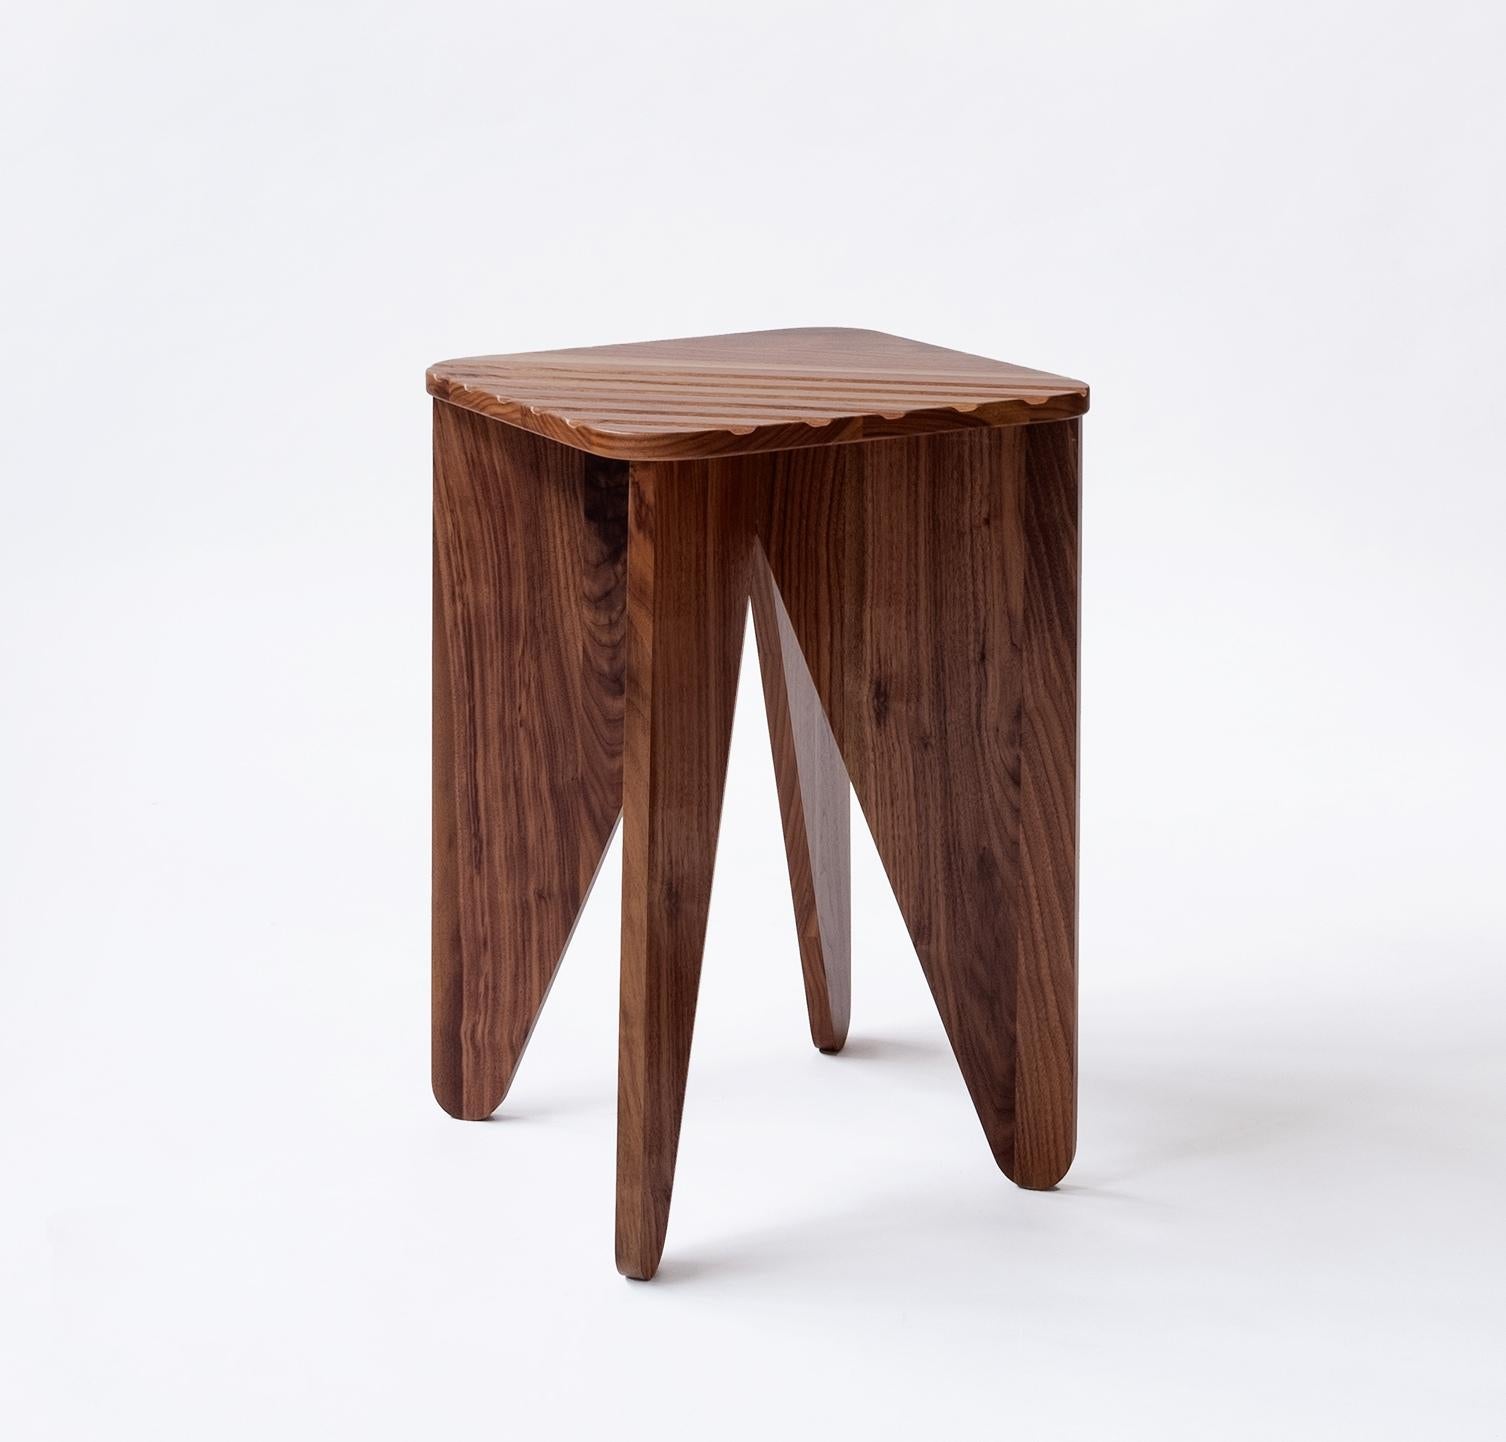 Collection S/One conçue par Serena Confalo-
Nieri pour Medulum se compose de 3 tables basses en bois.
Les pièces se caractérisent par la répétition de trian-
gulaires, qui font visuellement référence à l'art japonais.
de l'origami.
Ce recours à